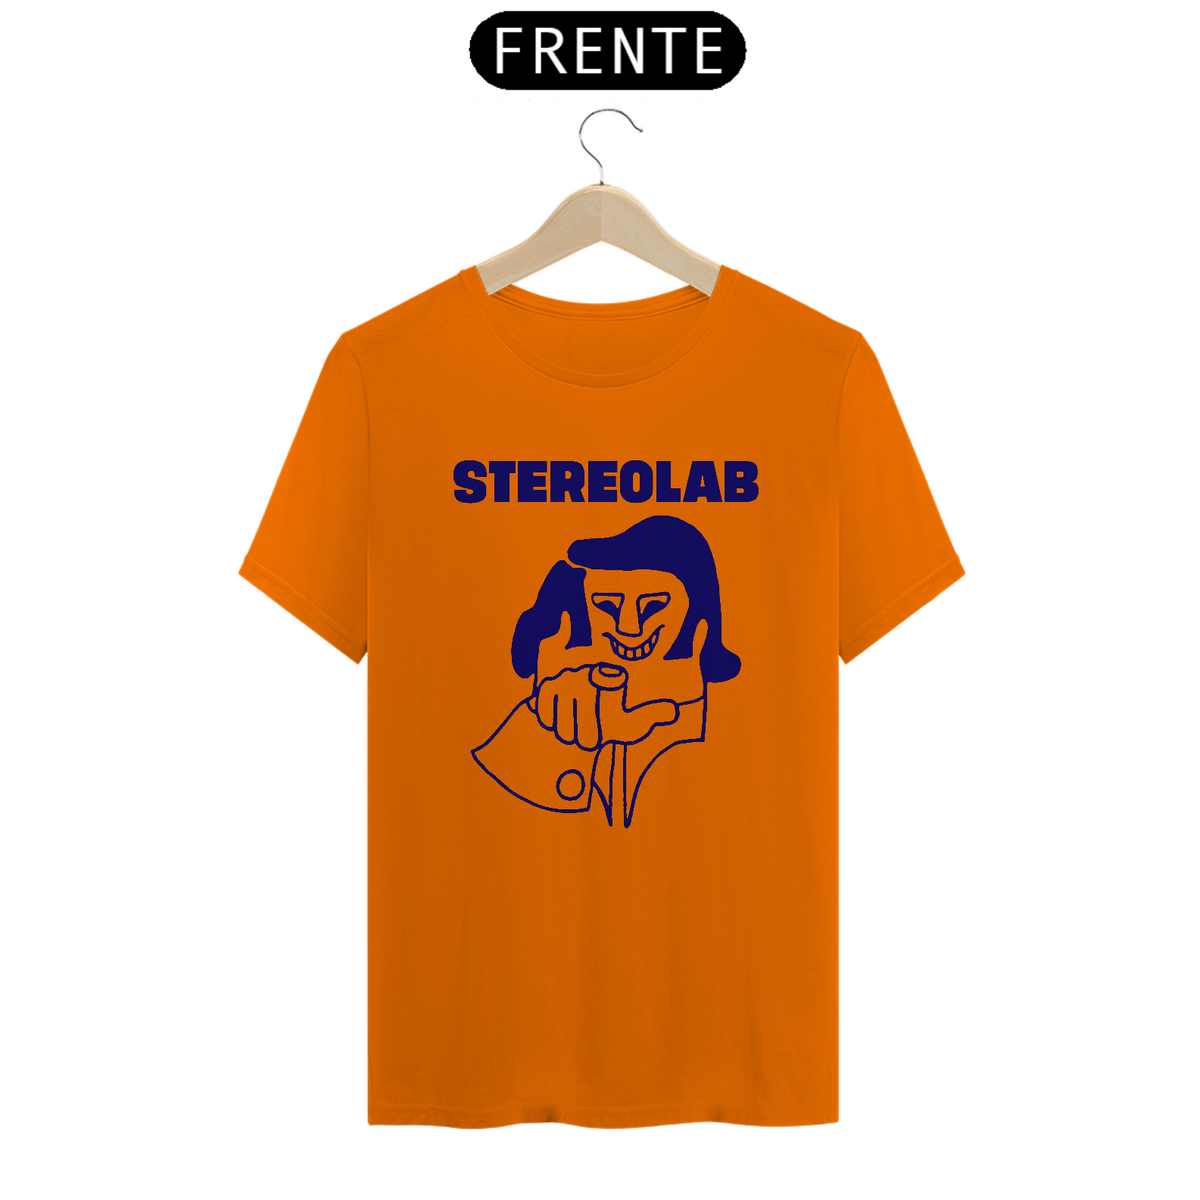 Nome do produto: STEREOLAB